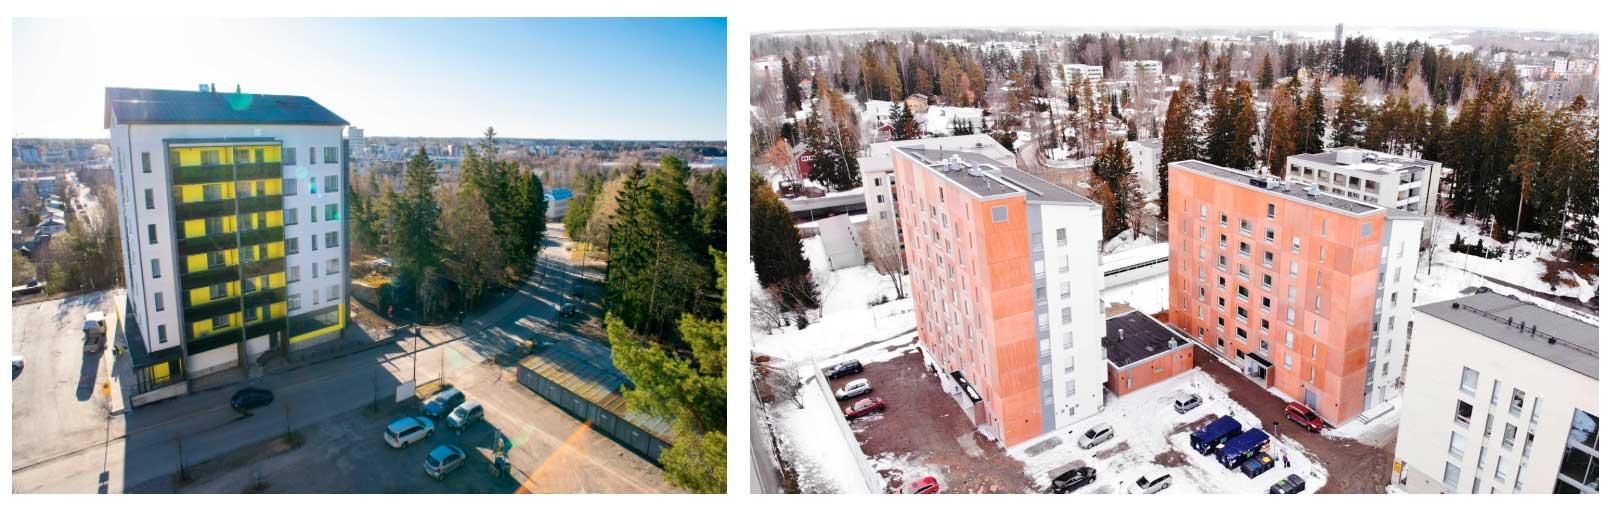 Boostin Milestone-ratkaisulla valmistuneet kohteet Järvenpäässä tarjoavat nykyaikaista ja kohtuuhintaista asumista.